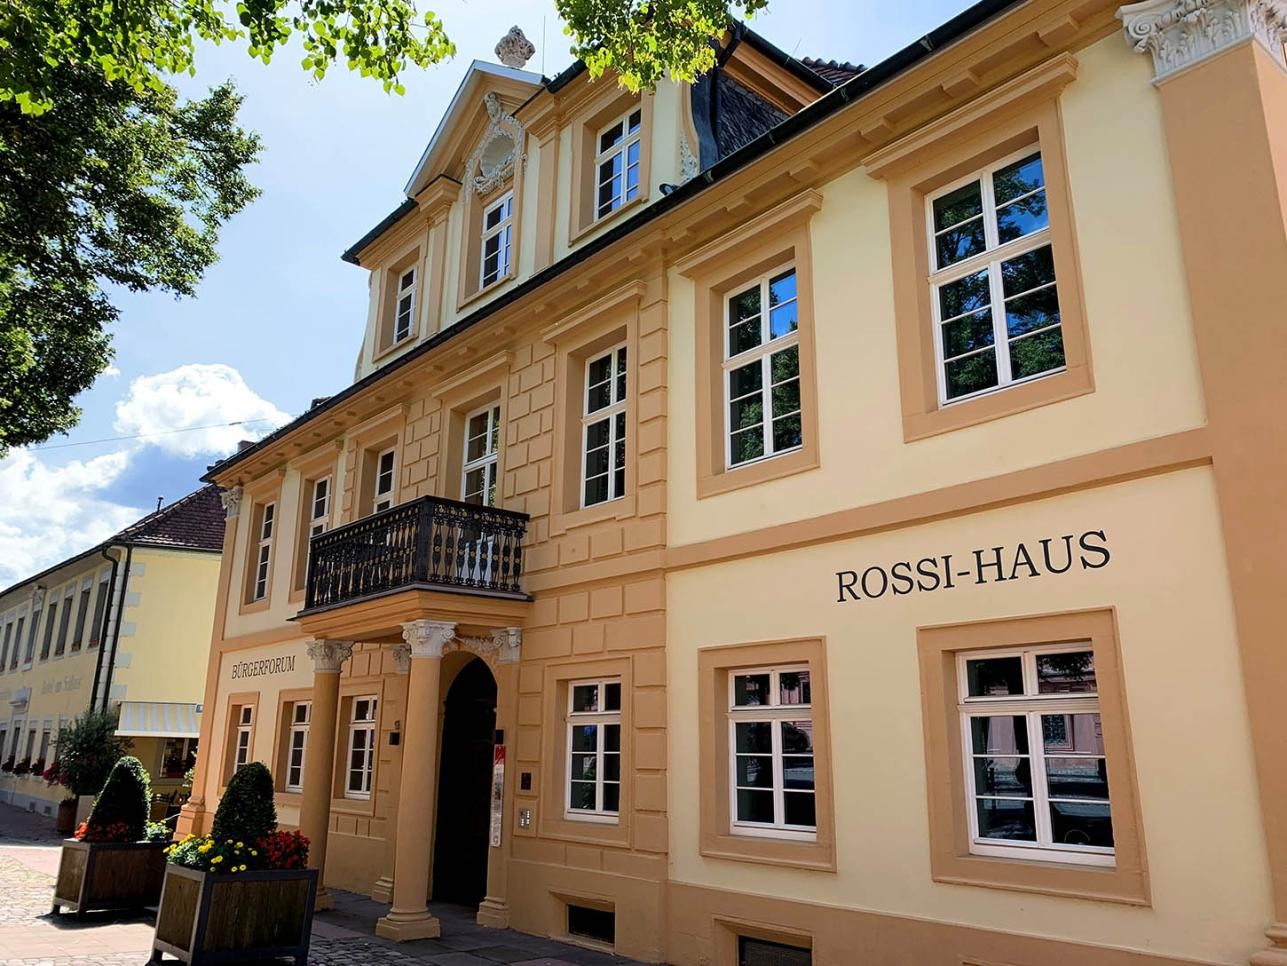 Barrierefrei zugänglich: Das Rossi-Haus in Rastatt